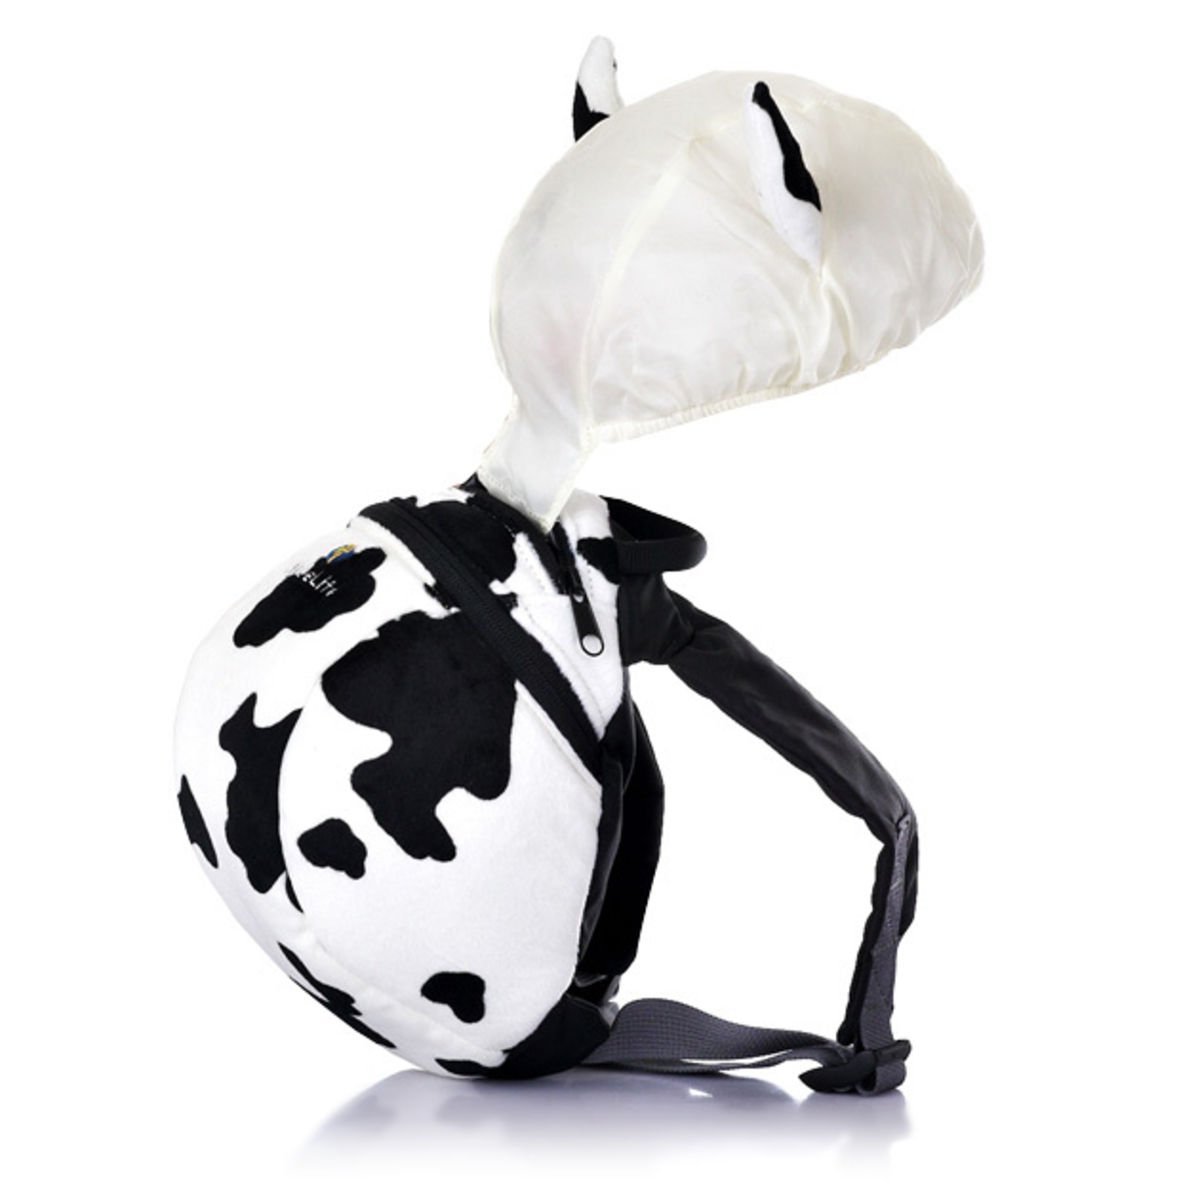 日本采购 LittleLife带牵引绳背包动物造型幼儿双肩背包防走失包